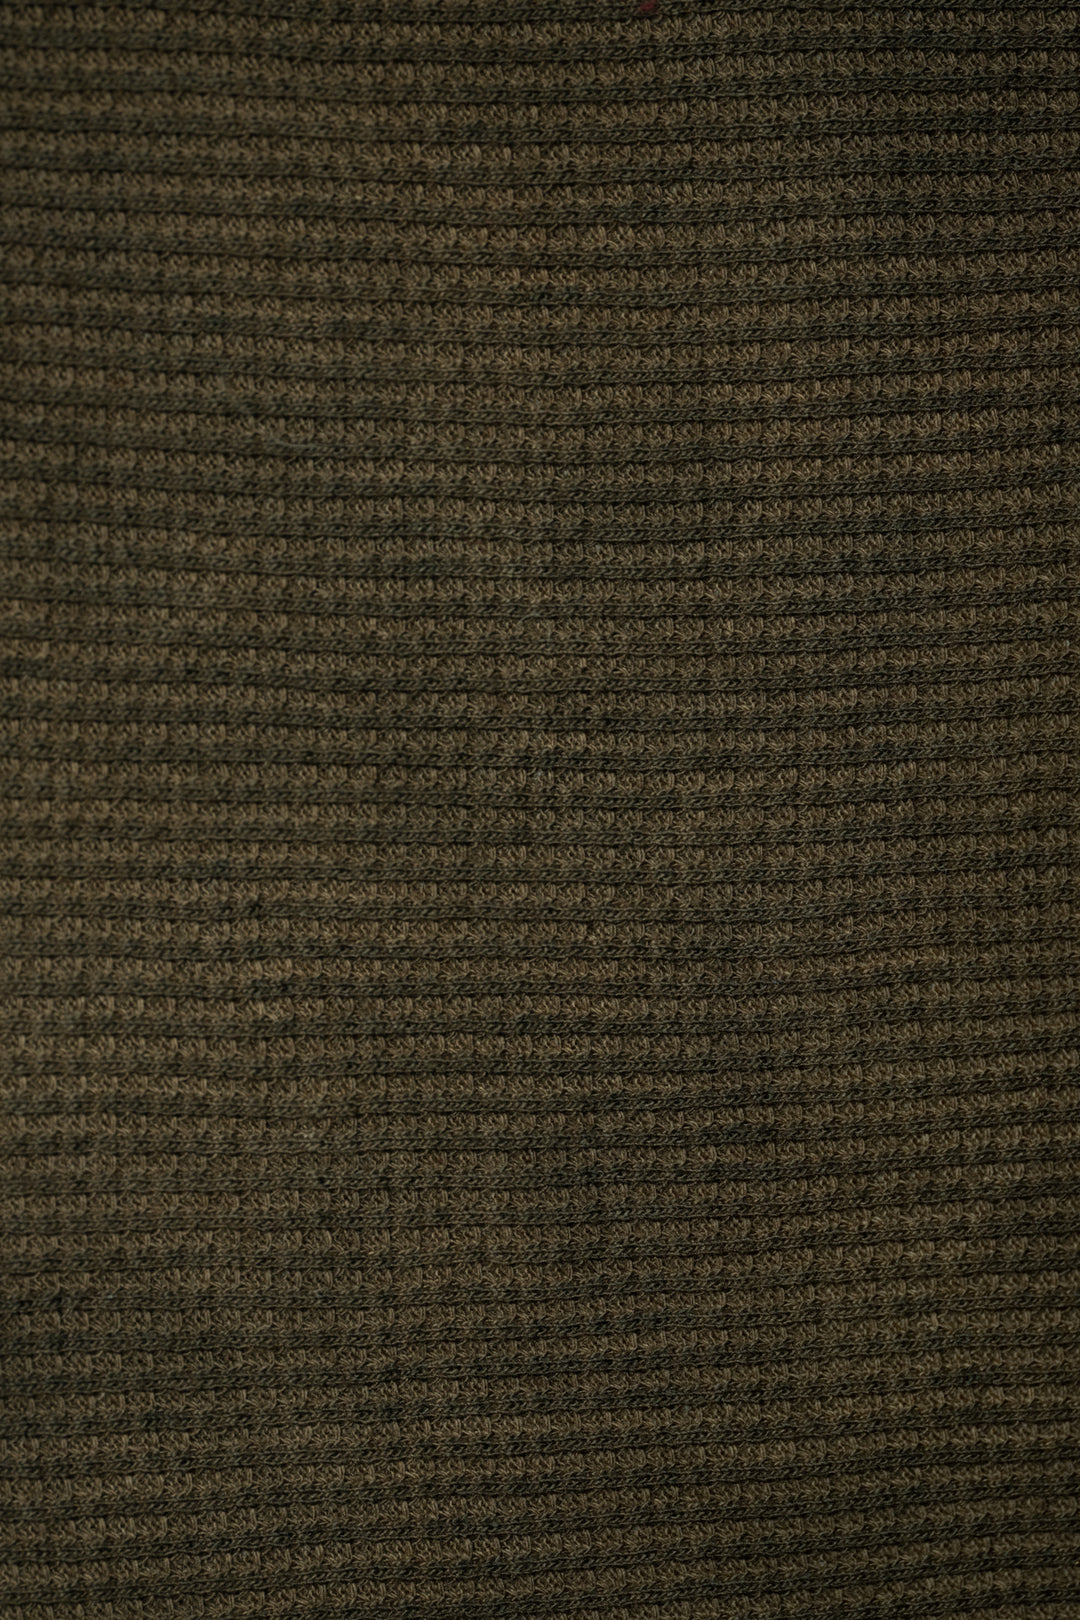 Fabric Swatch (100% Cotton waffle knit)